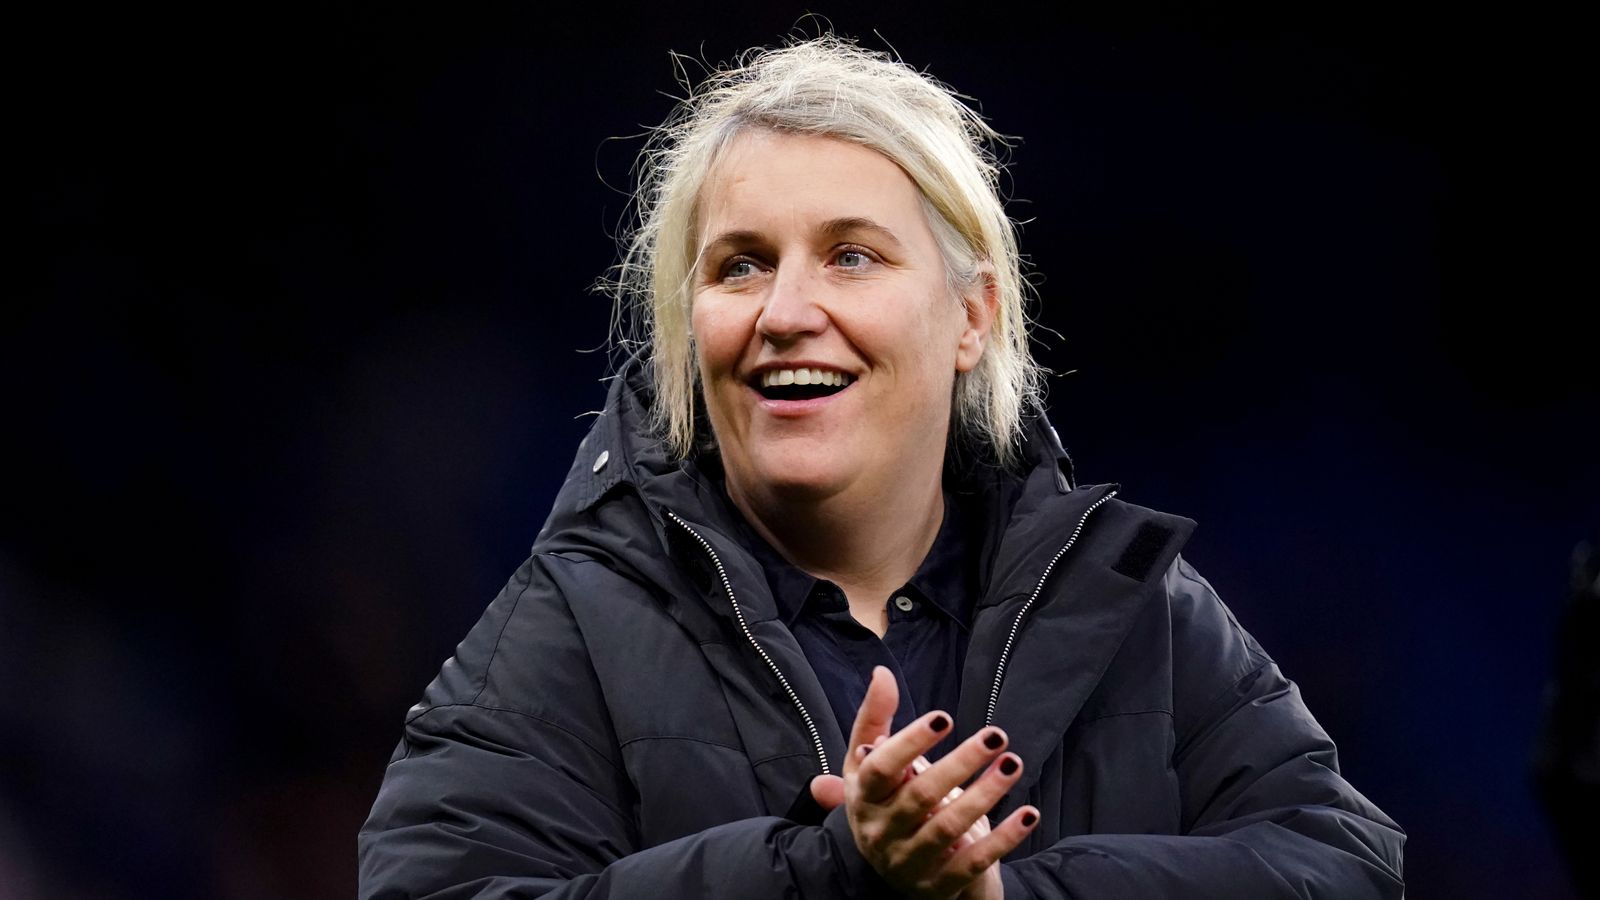 Emma Hayes: 'Money is not my motivator' - Former Chelsea boss has eye on glory as US women's head coach